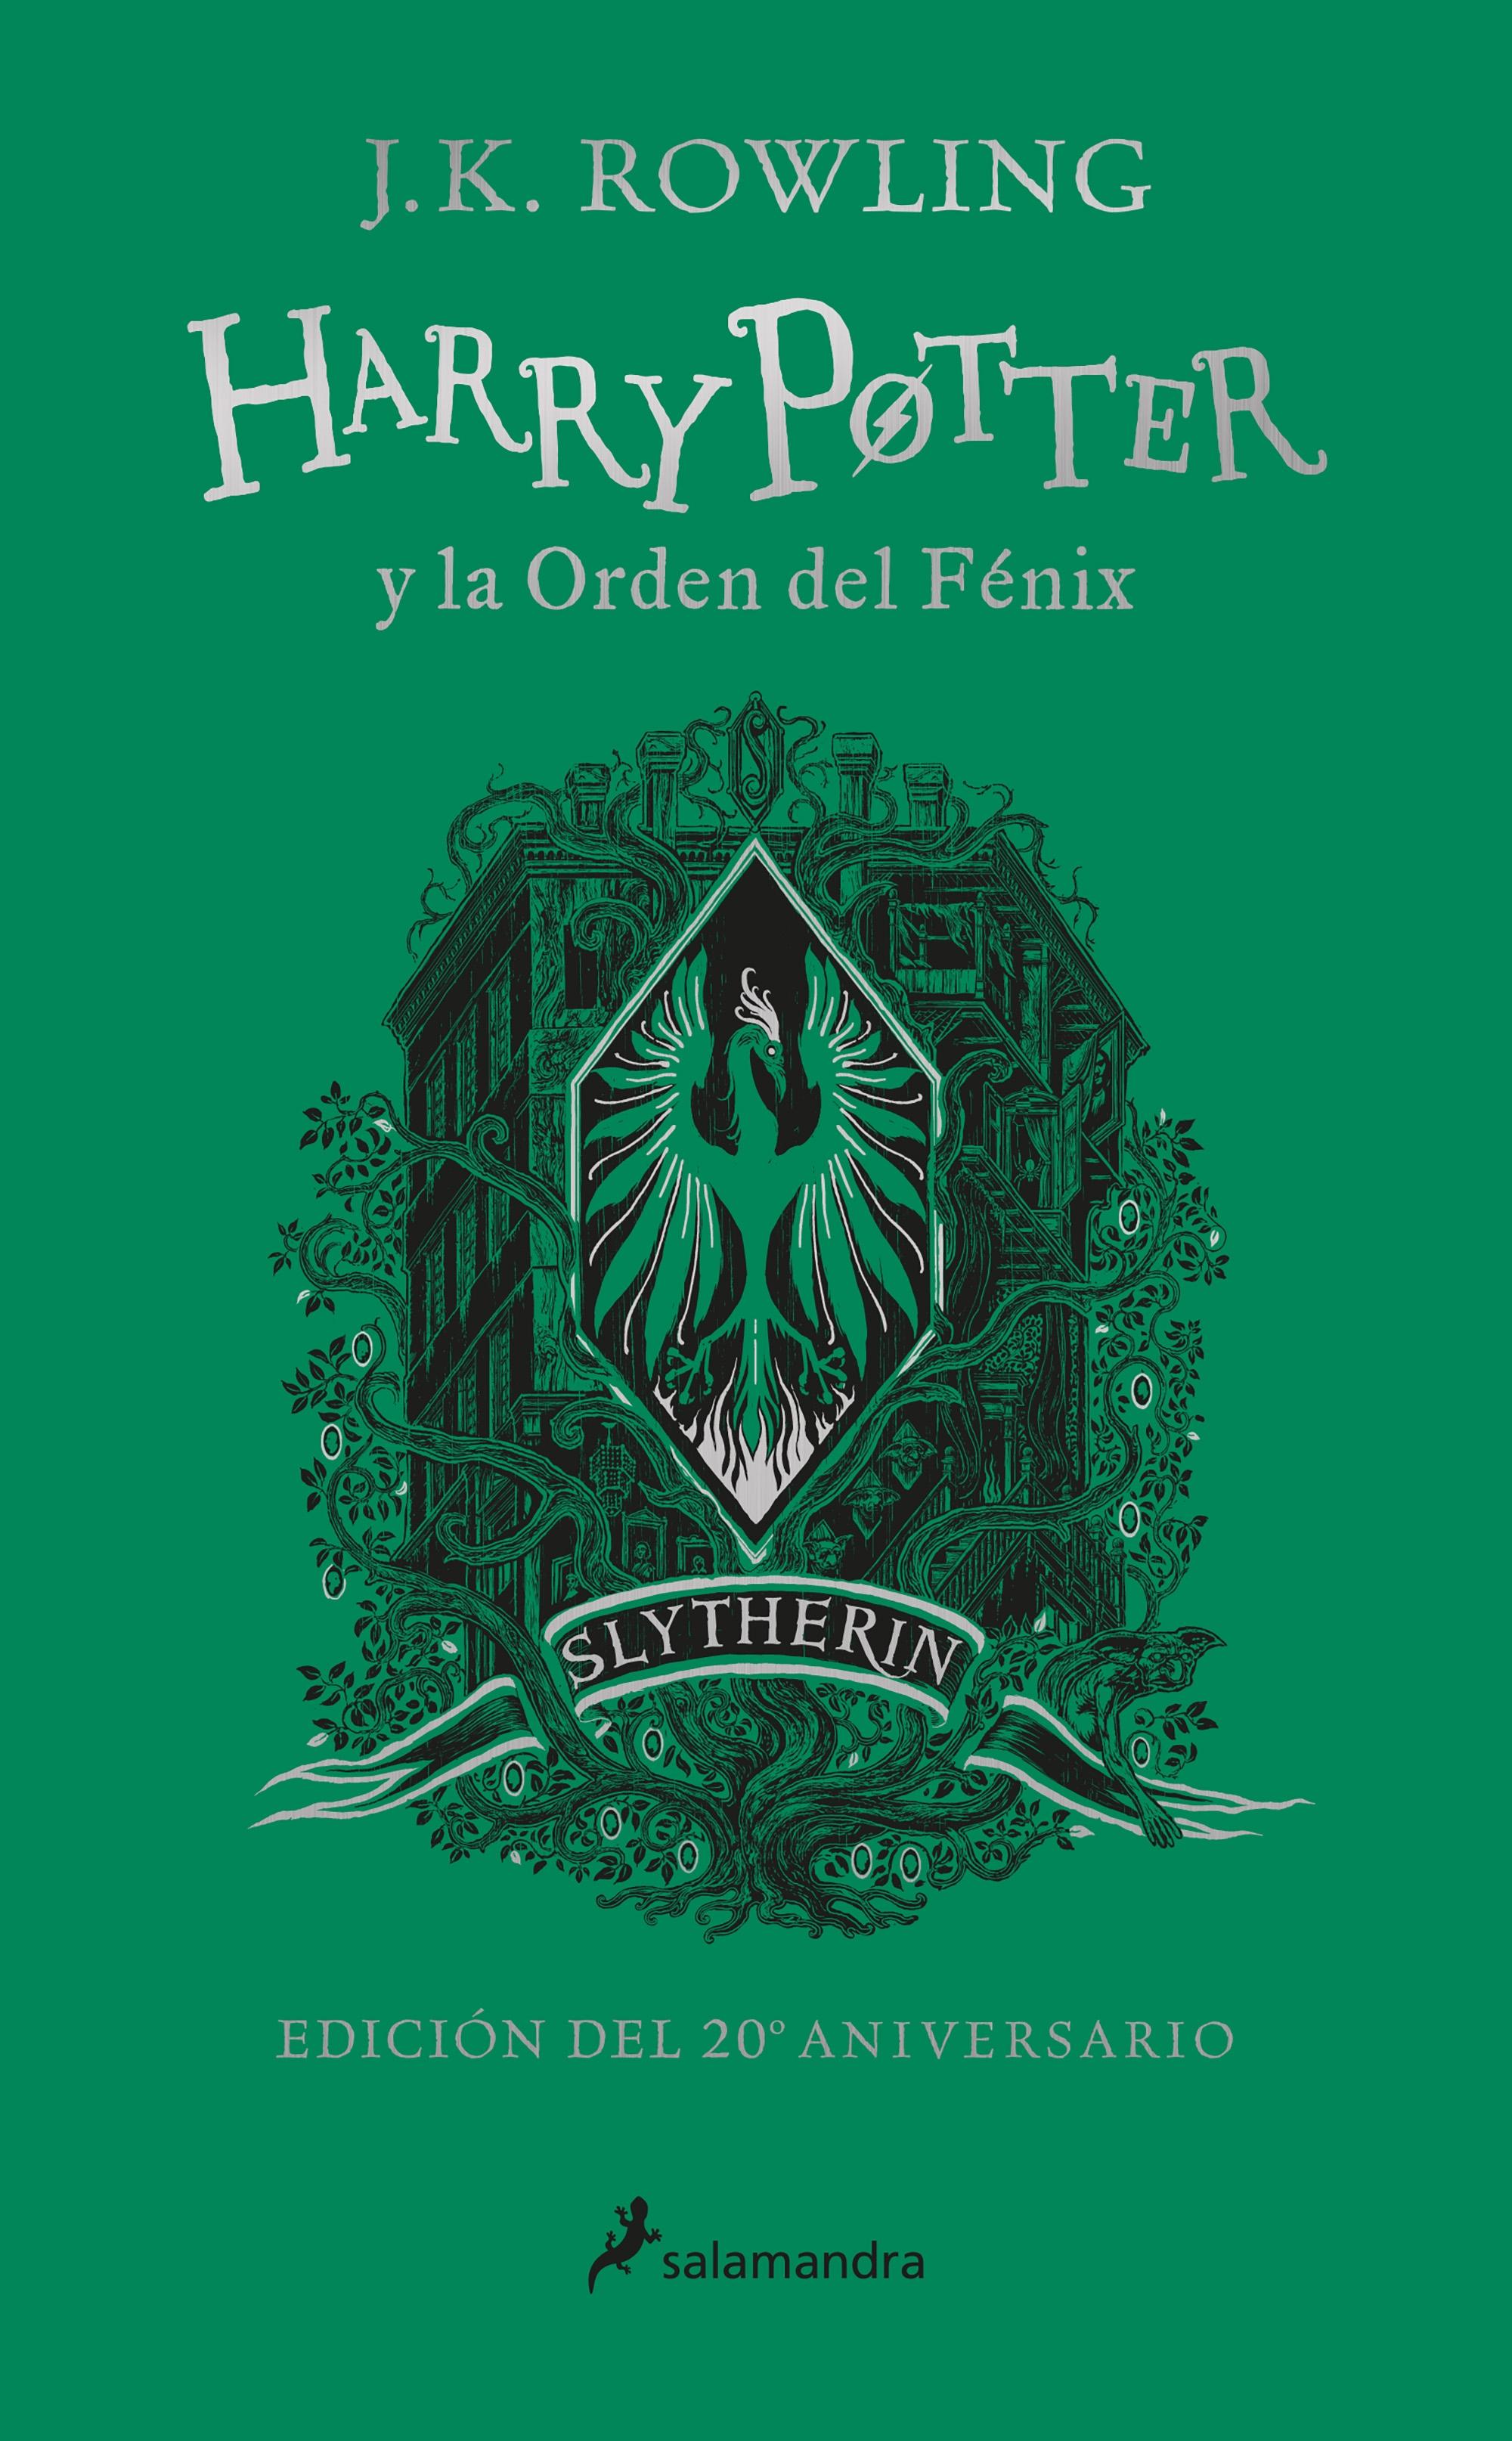 Harry Potter y la Orden del Fenix Edicion "Edicion Slytherin del 20º Aniversario". 